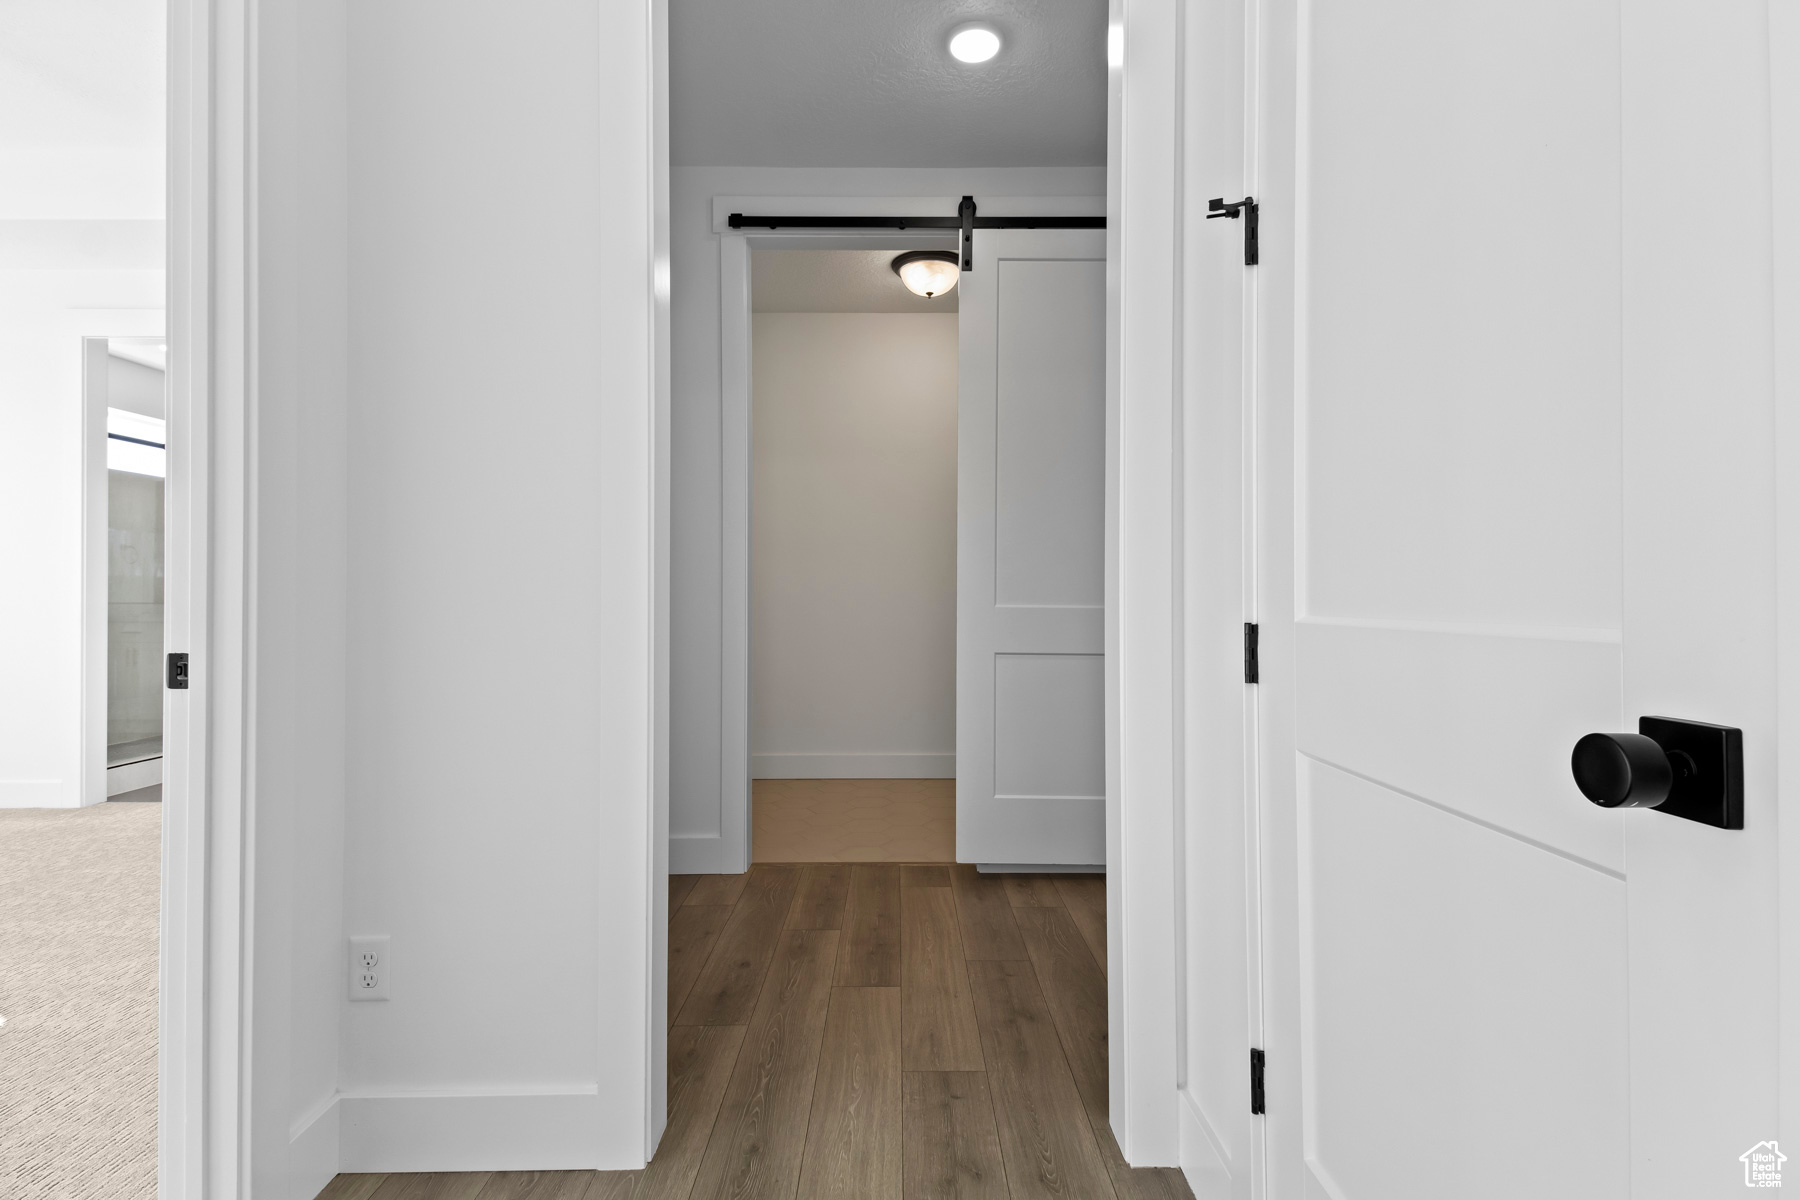 Corridor featuring hardwood / wood-style flooring and a barn door